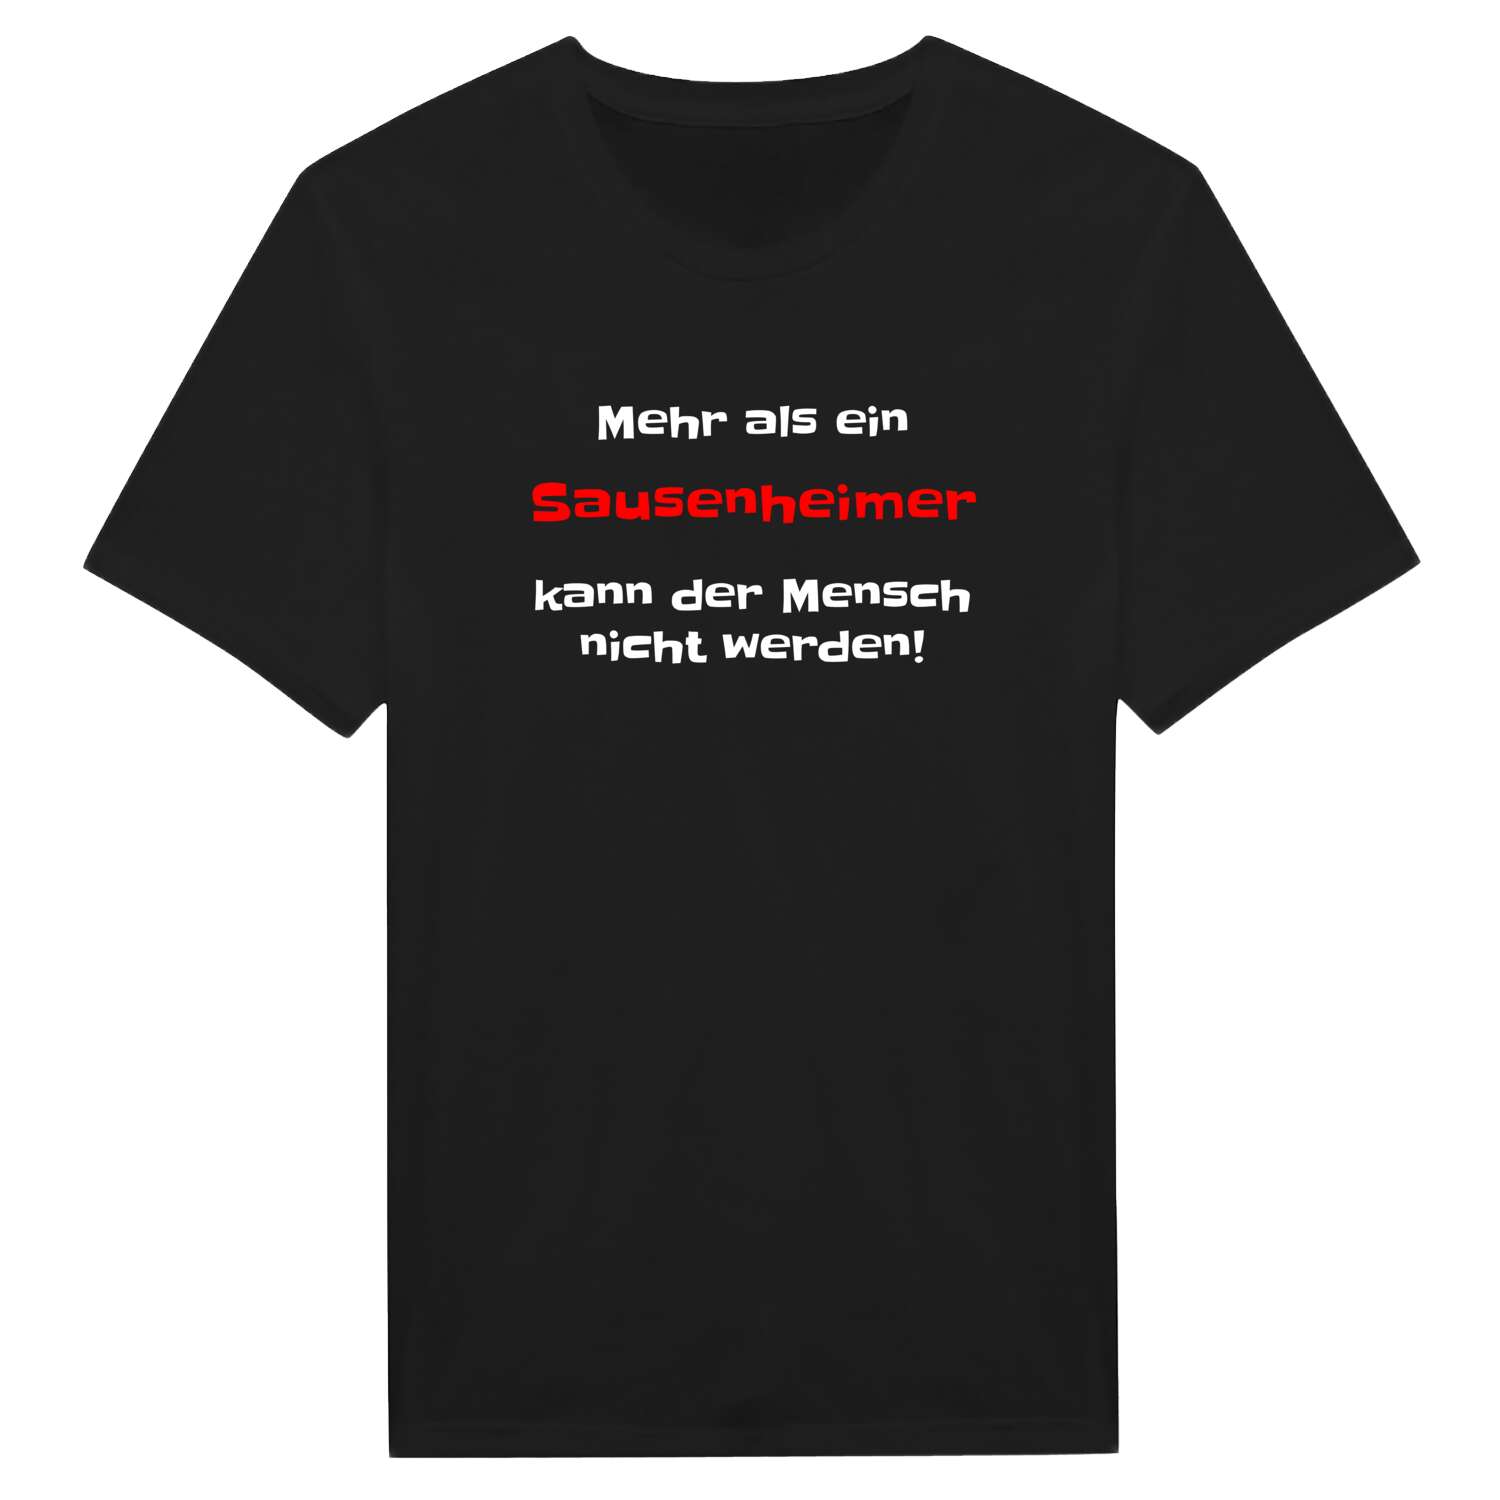 Sausenheim T-Shirt »Mehr als ein«